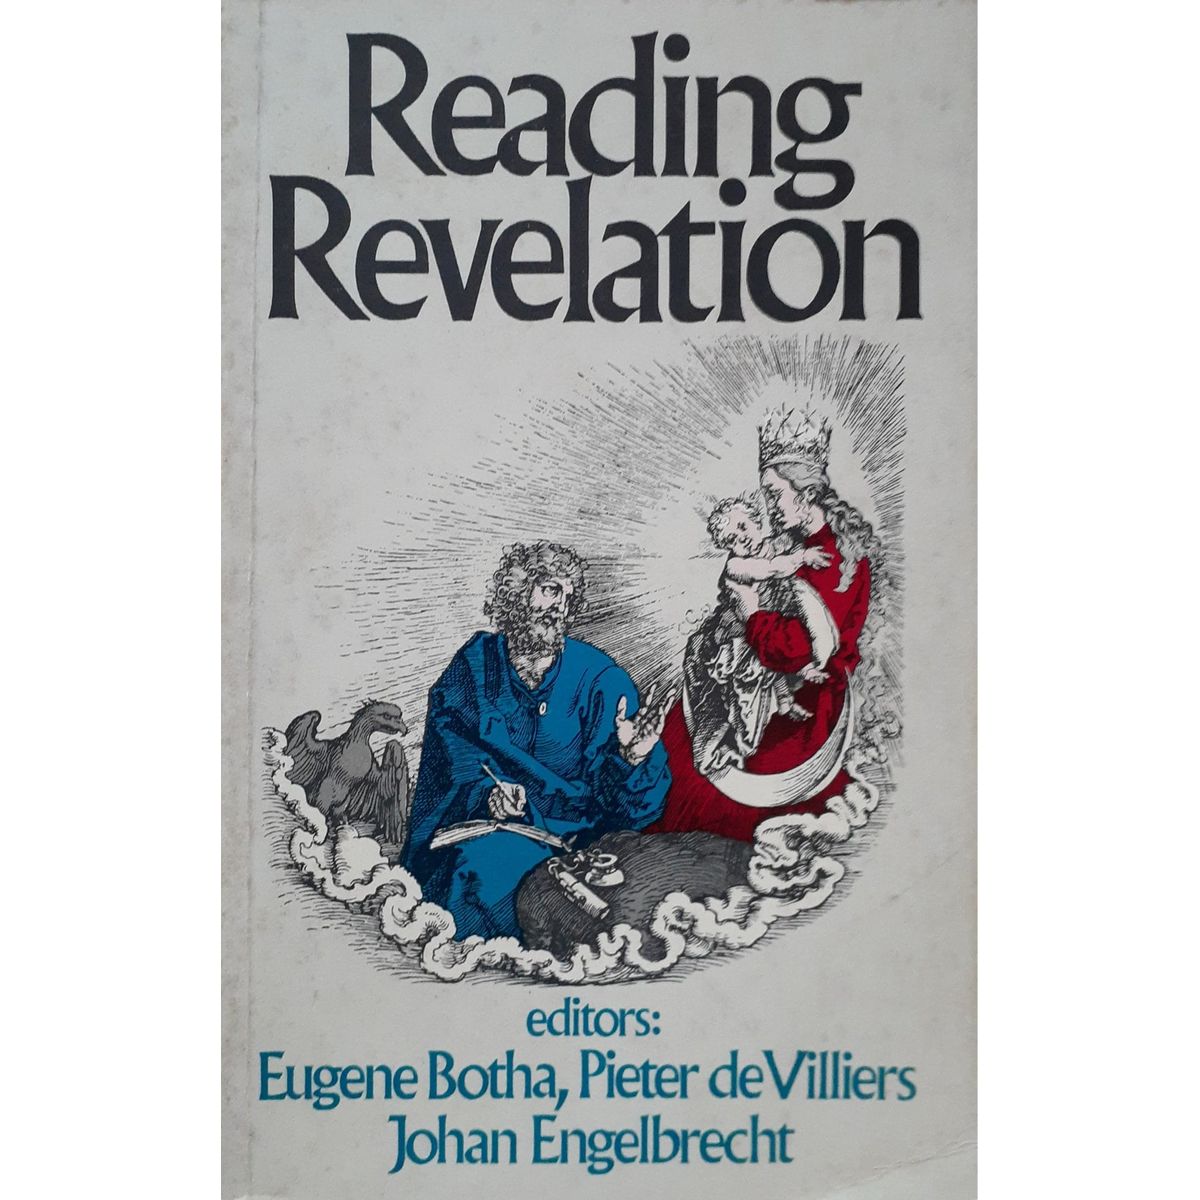 ISBN: 9780627015854 / 0627015859 - Reading Revelation by E. Botha, P. De Villiers & J. Engelbrecht [1988]